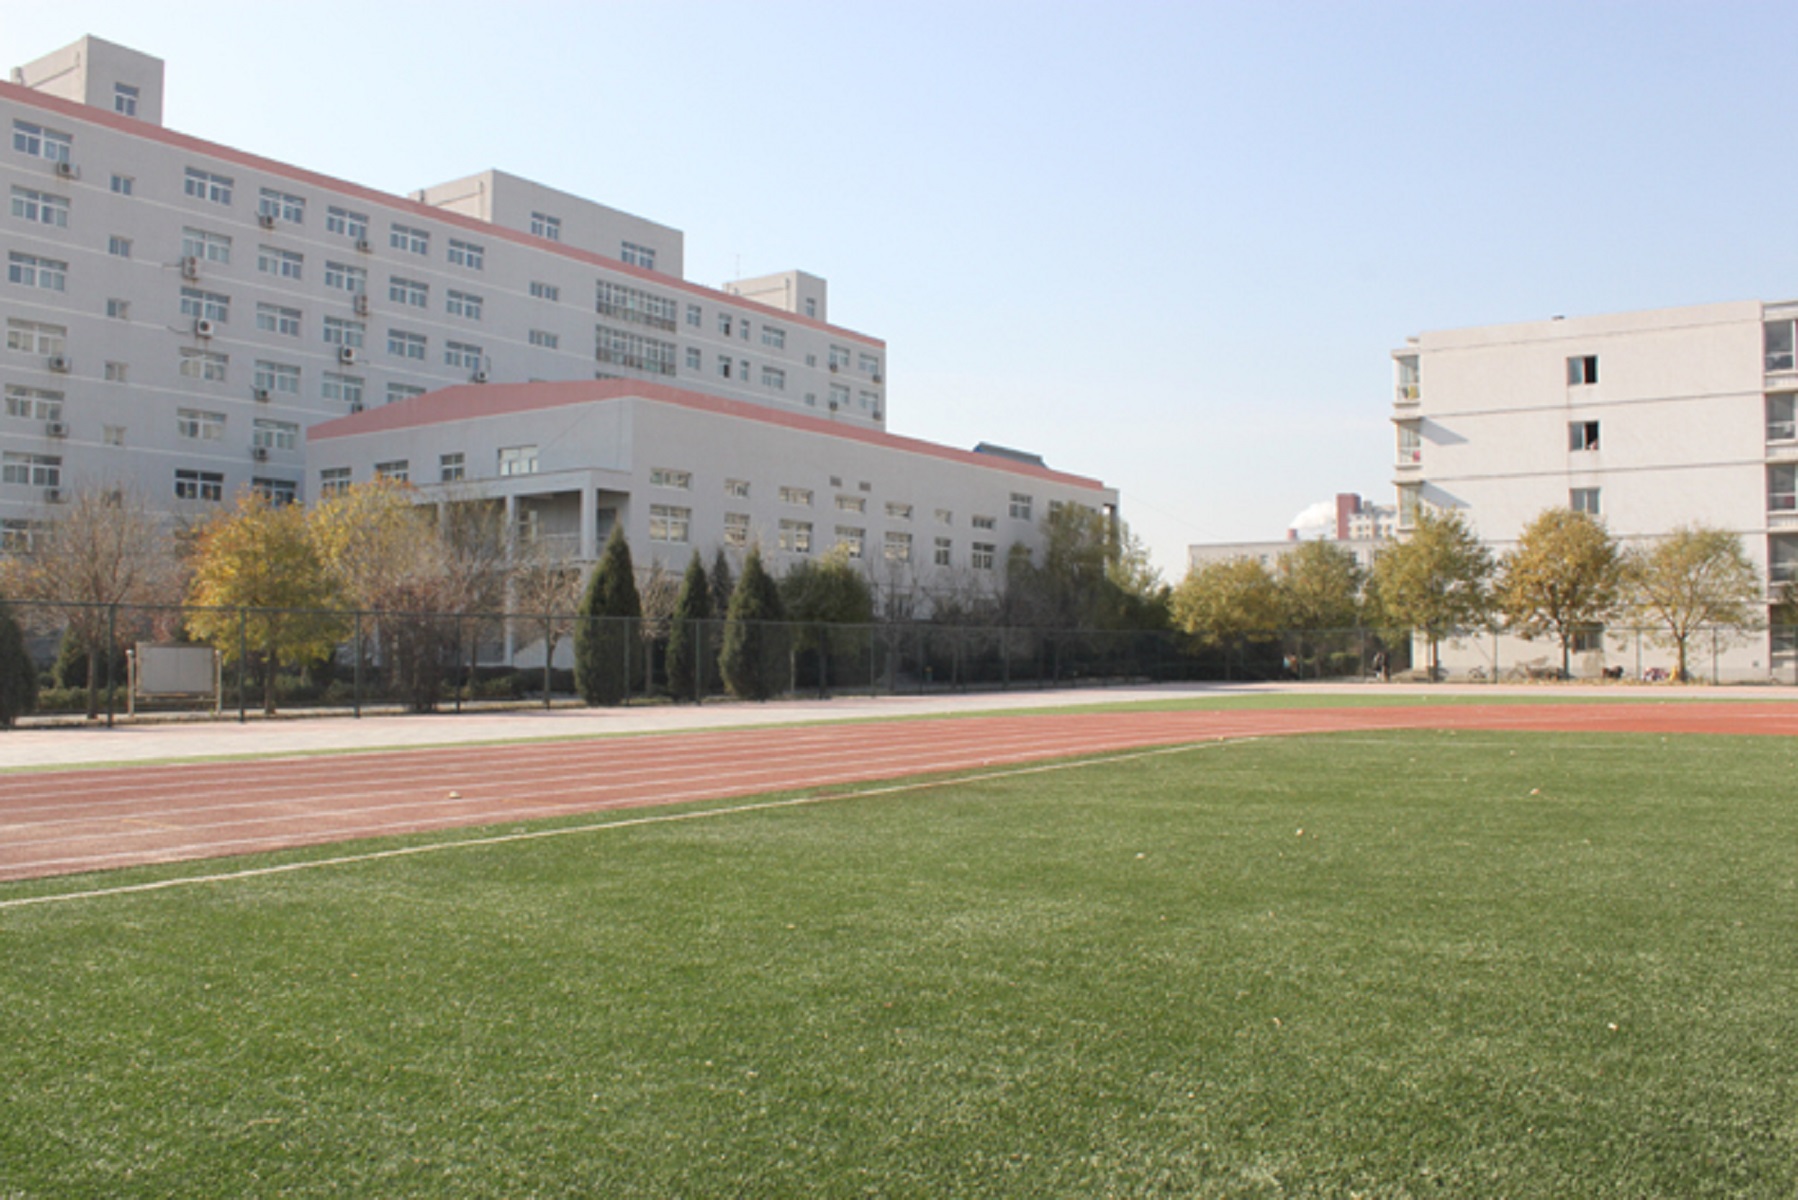 北京經貿職業學院